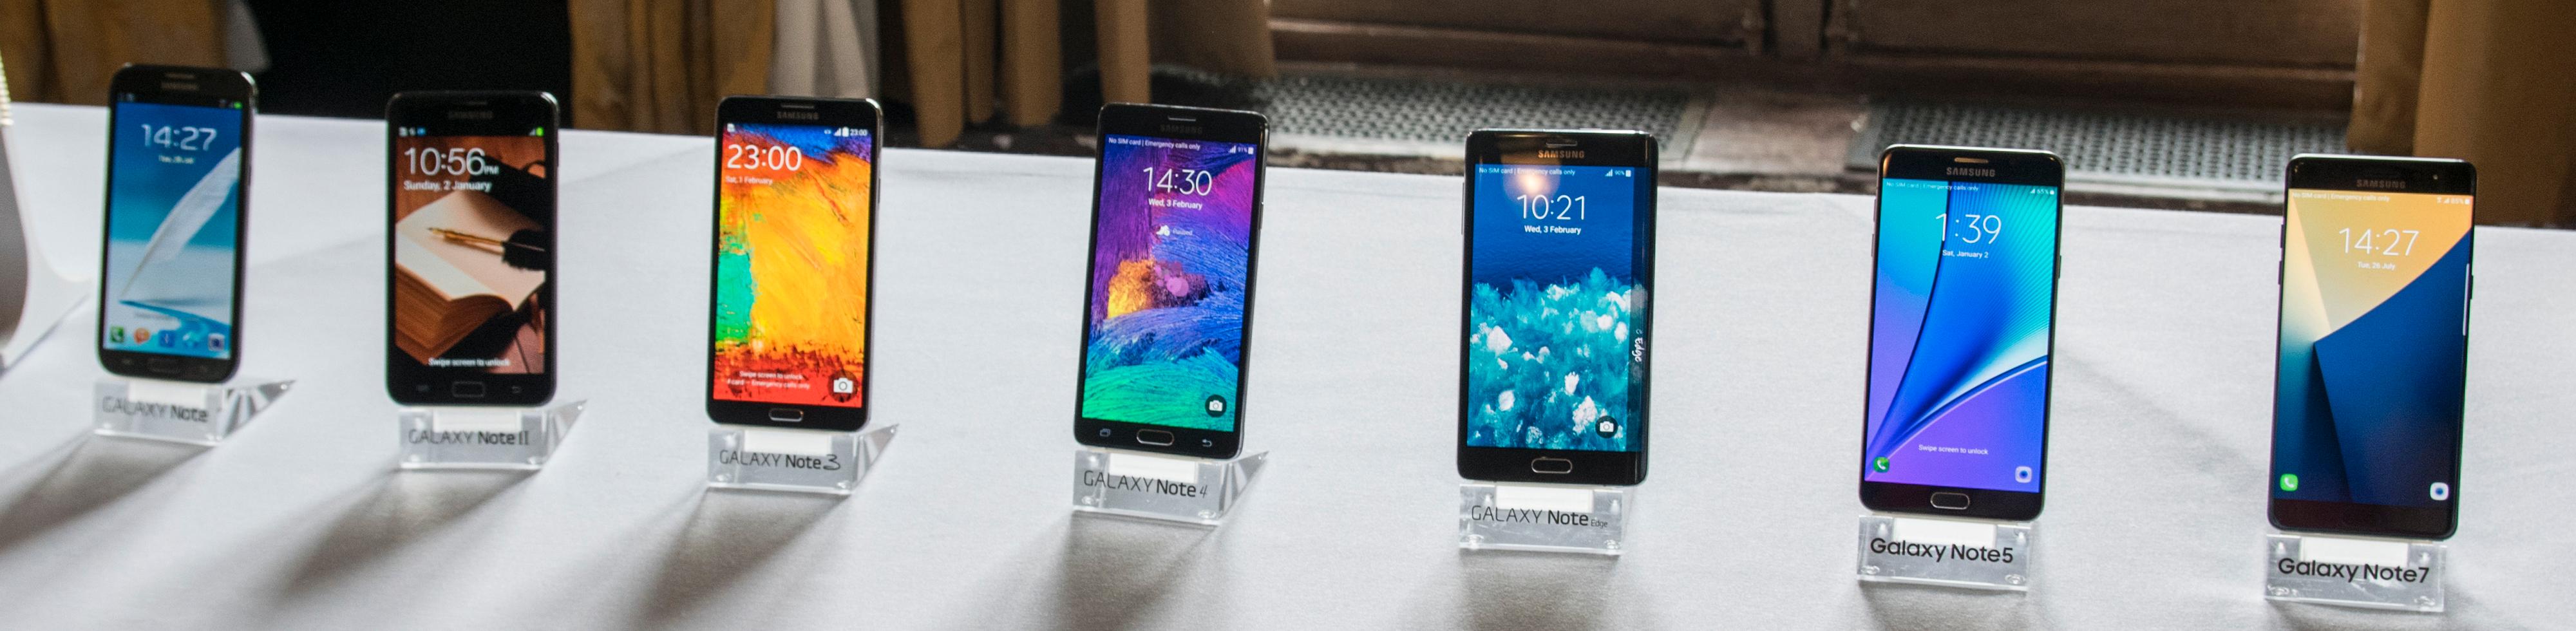 Samsung hadde med seg hele Galaxy Note-serien da de skulle vise frem den nyeste.